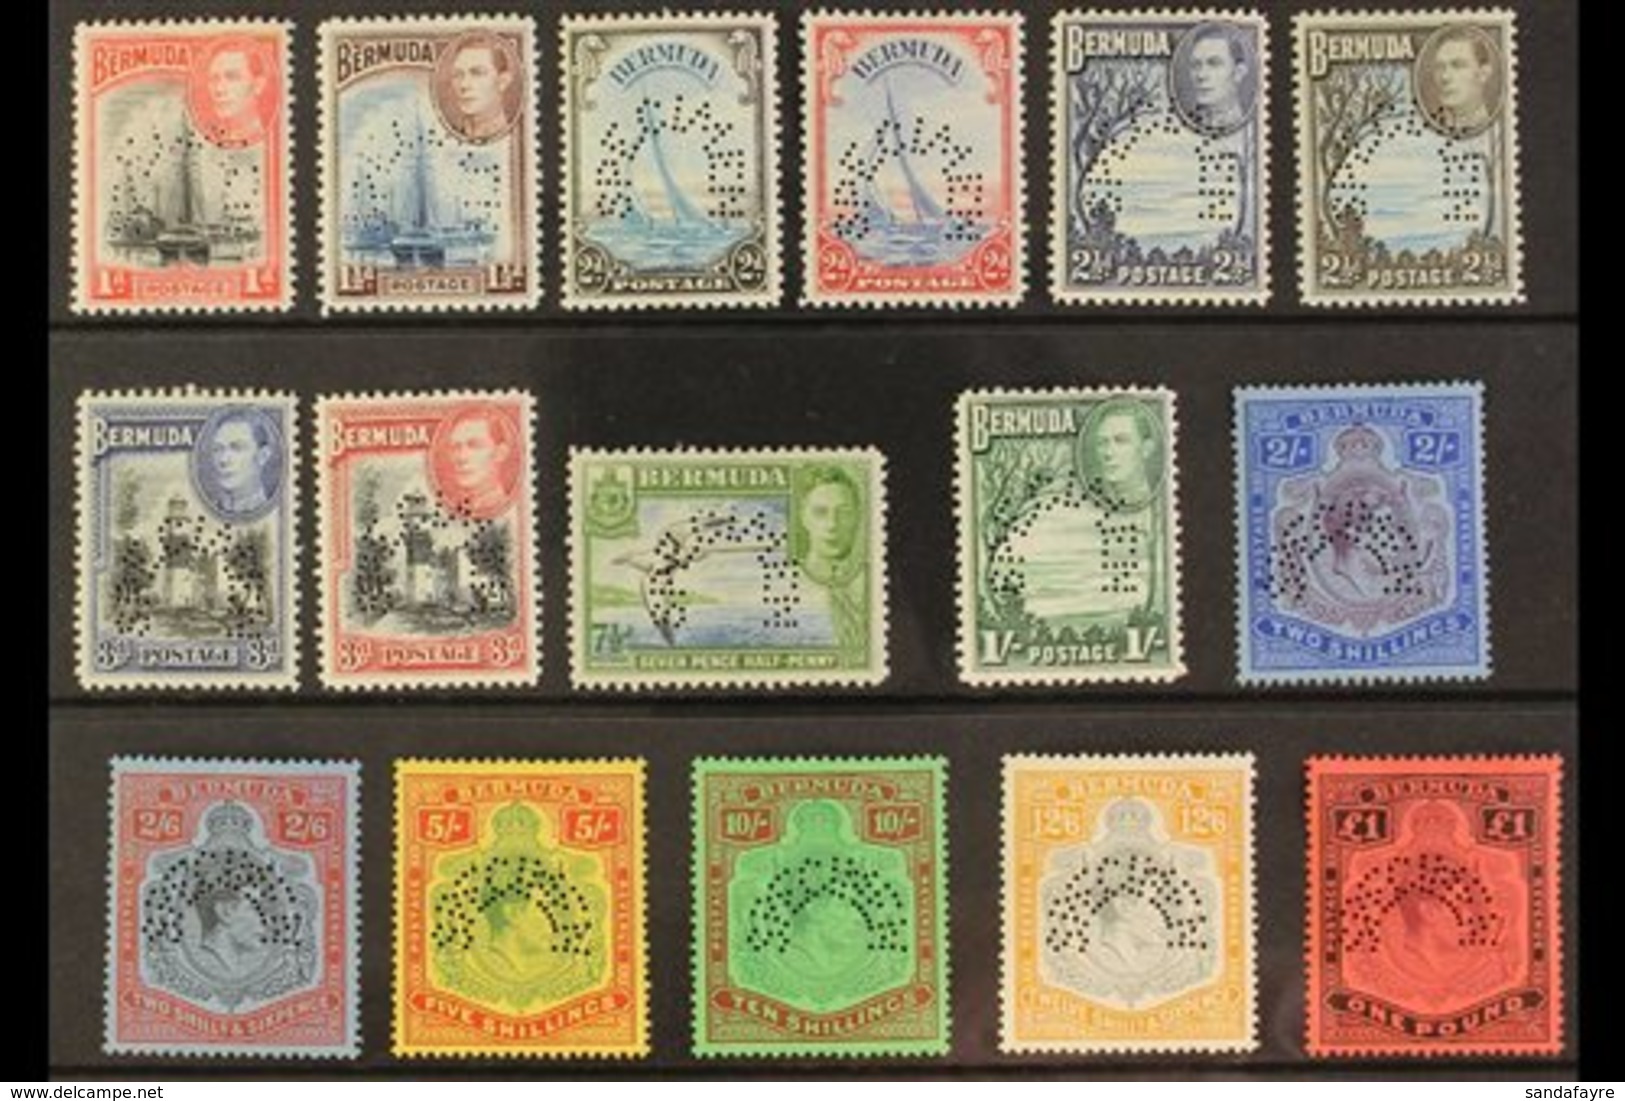 \Y 1938\Y Geo VI Set Complete, Perforated "Specimen", SG 110s/121ds, Very Fine Mint, Large Part Og. Rare Set. (16 Stamps - Bermuda